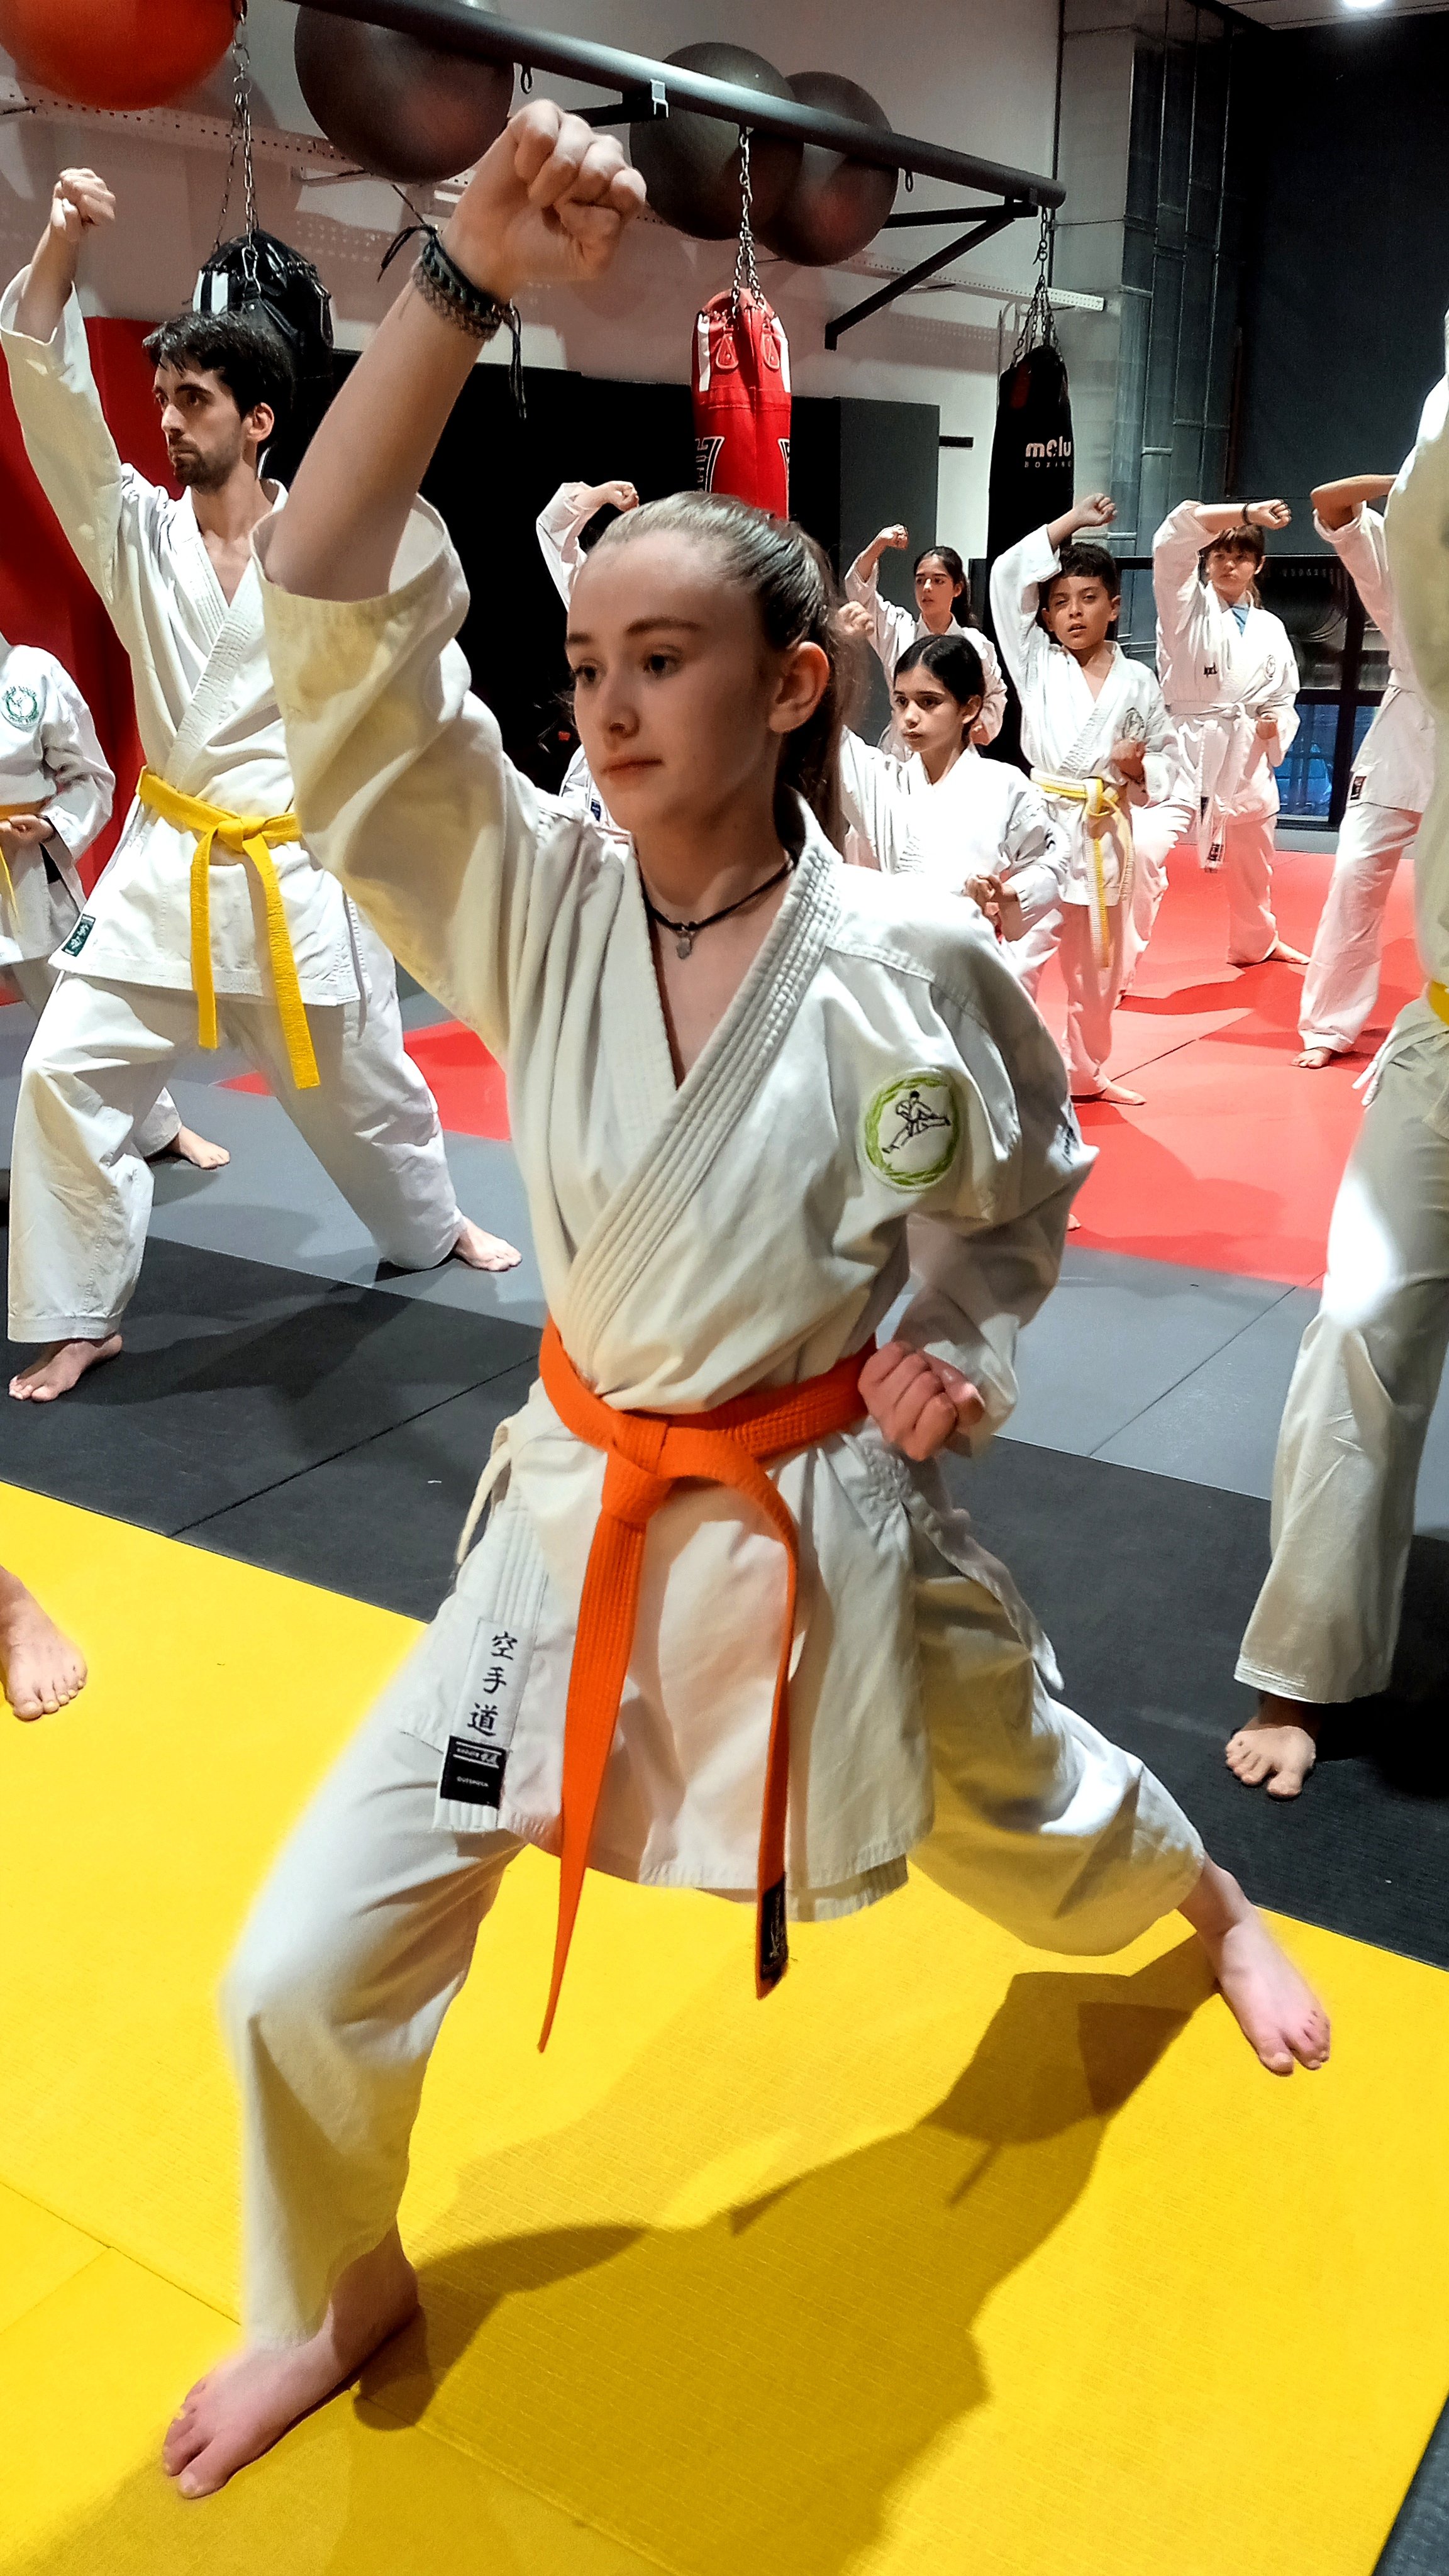 Clases de karate para niñas.